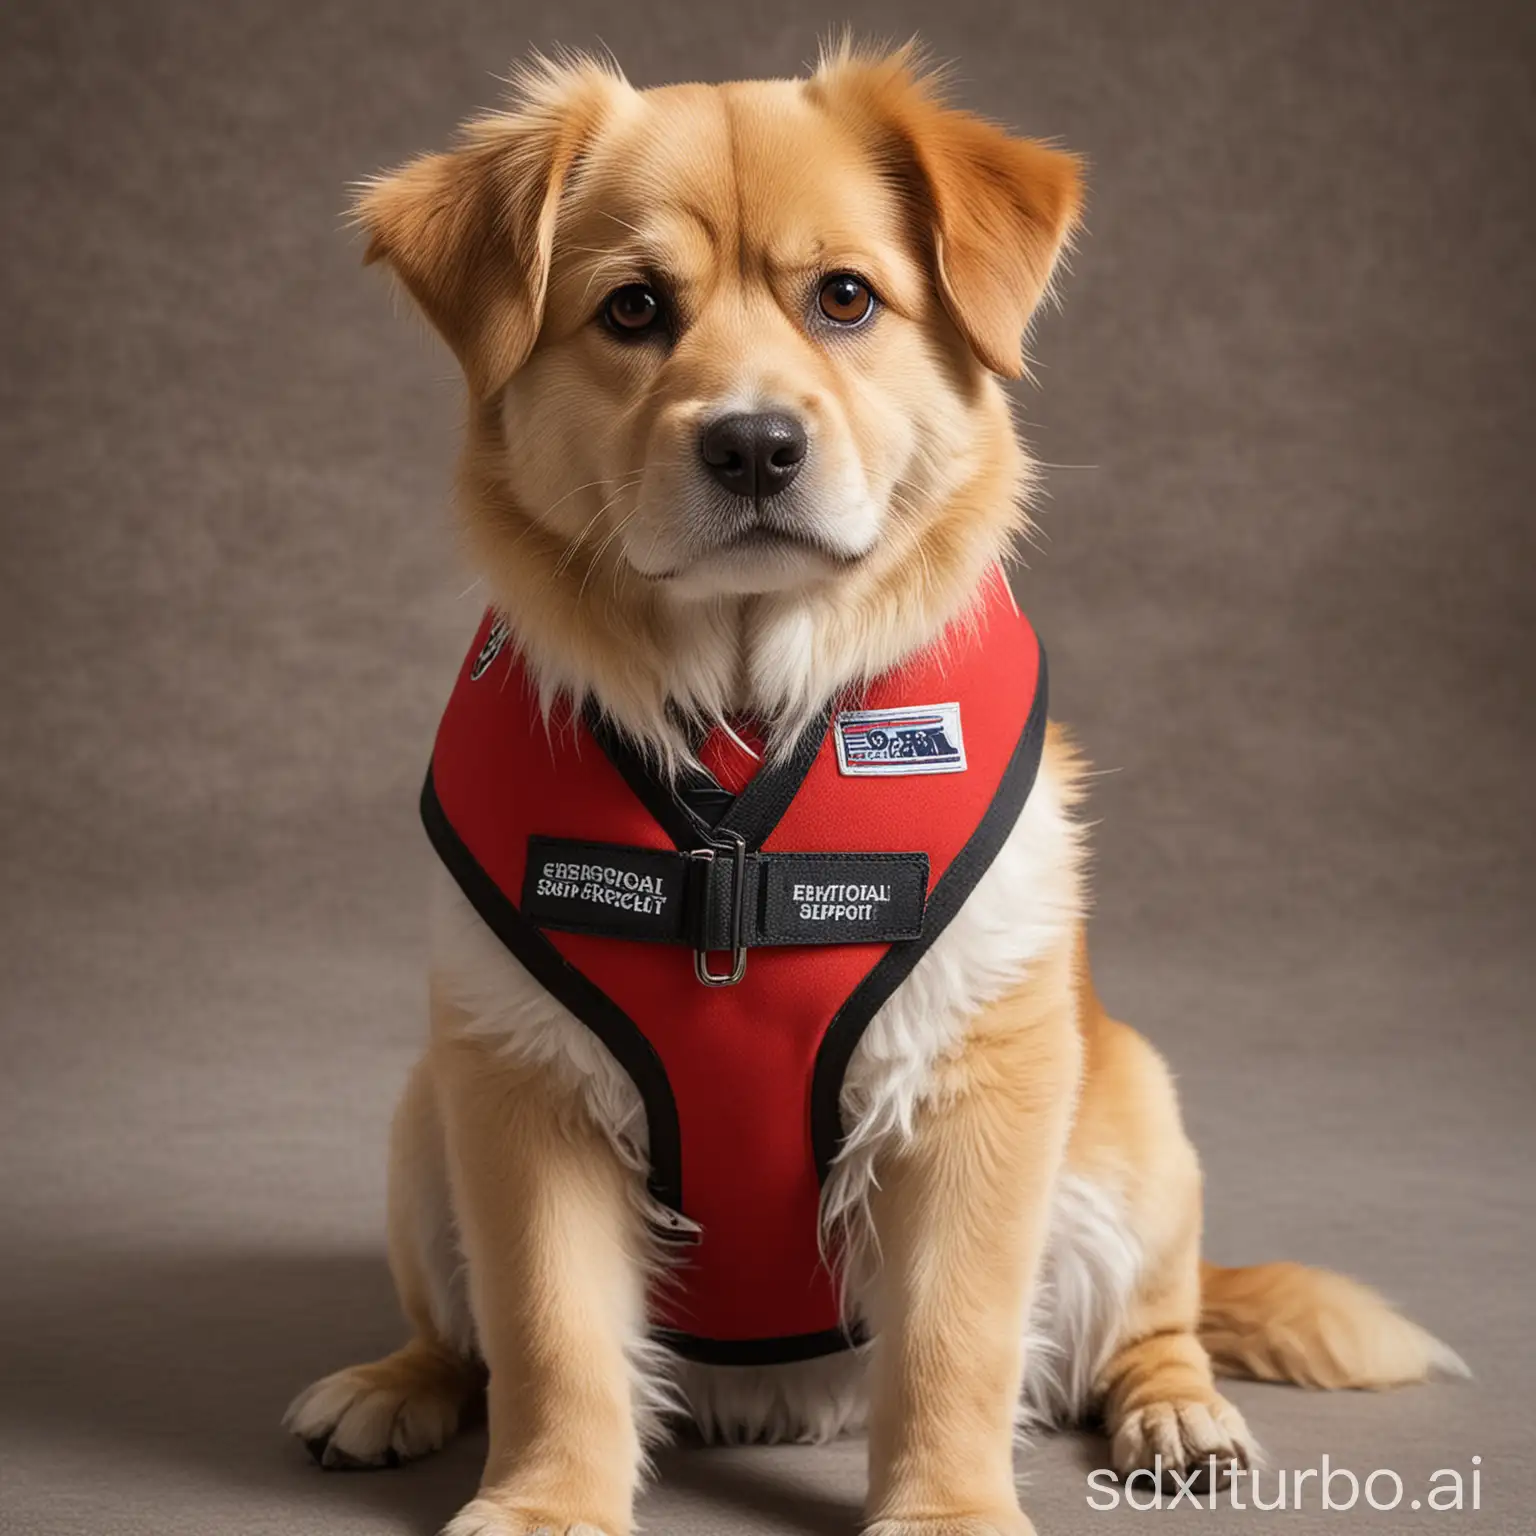 Dog-Wearing-Emotional-Support-Animal-Red-Vest-Offering-Comfort